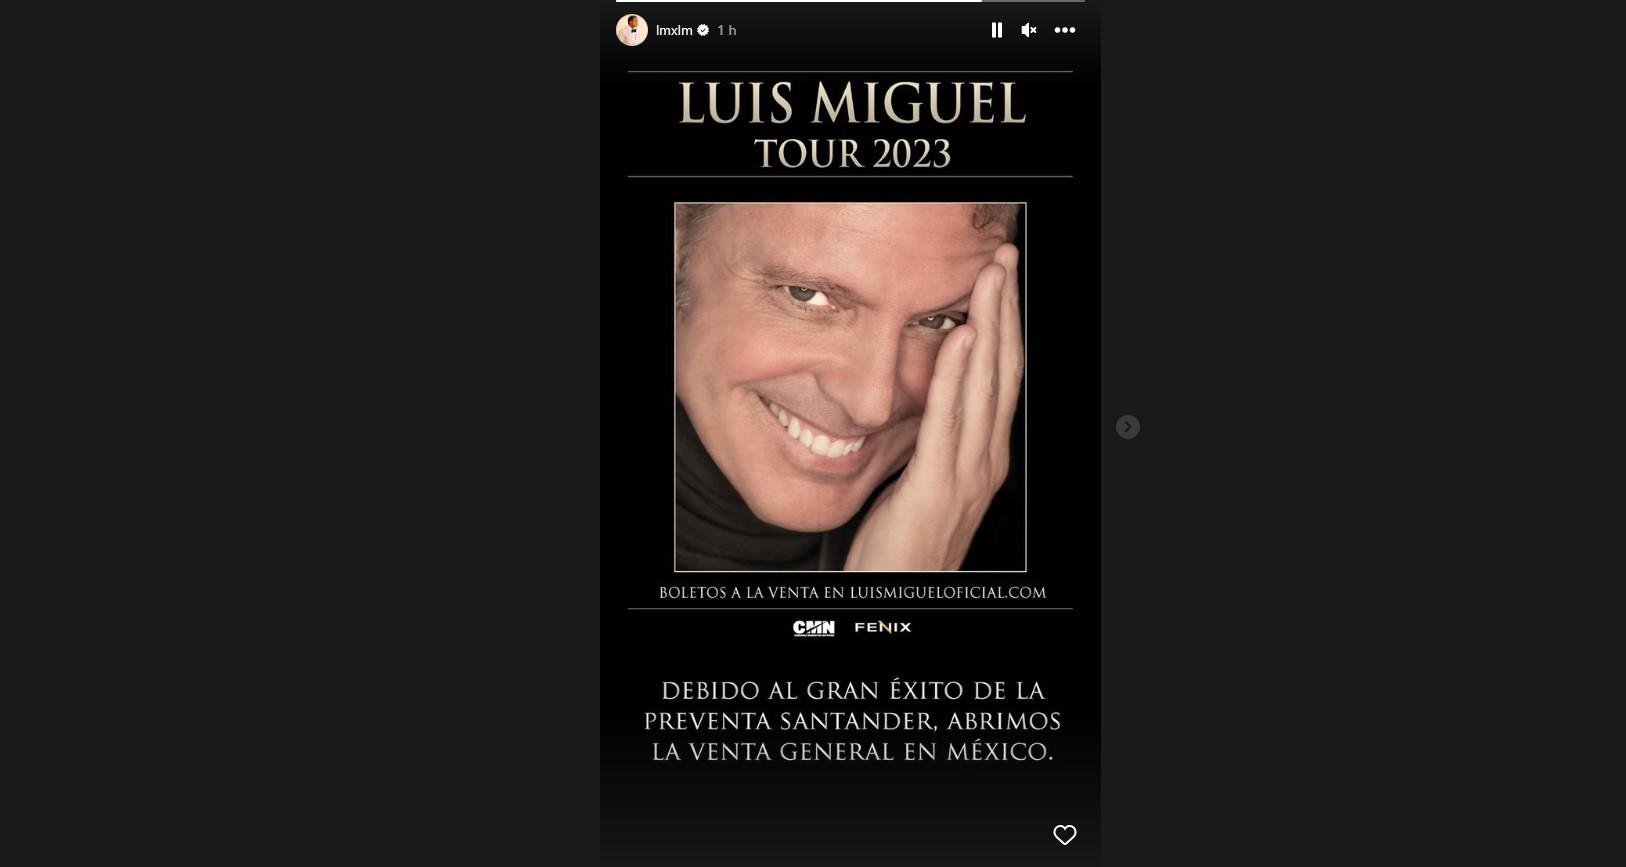 $!Adelantan venta abierta de boletos para conciertos de Luis Miguel